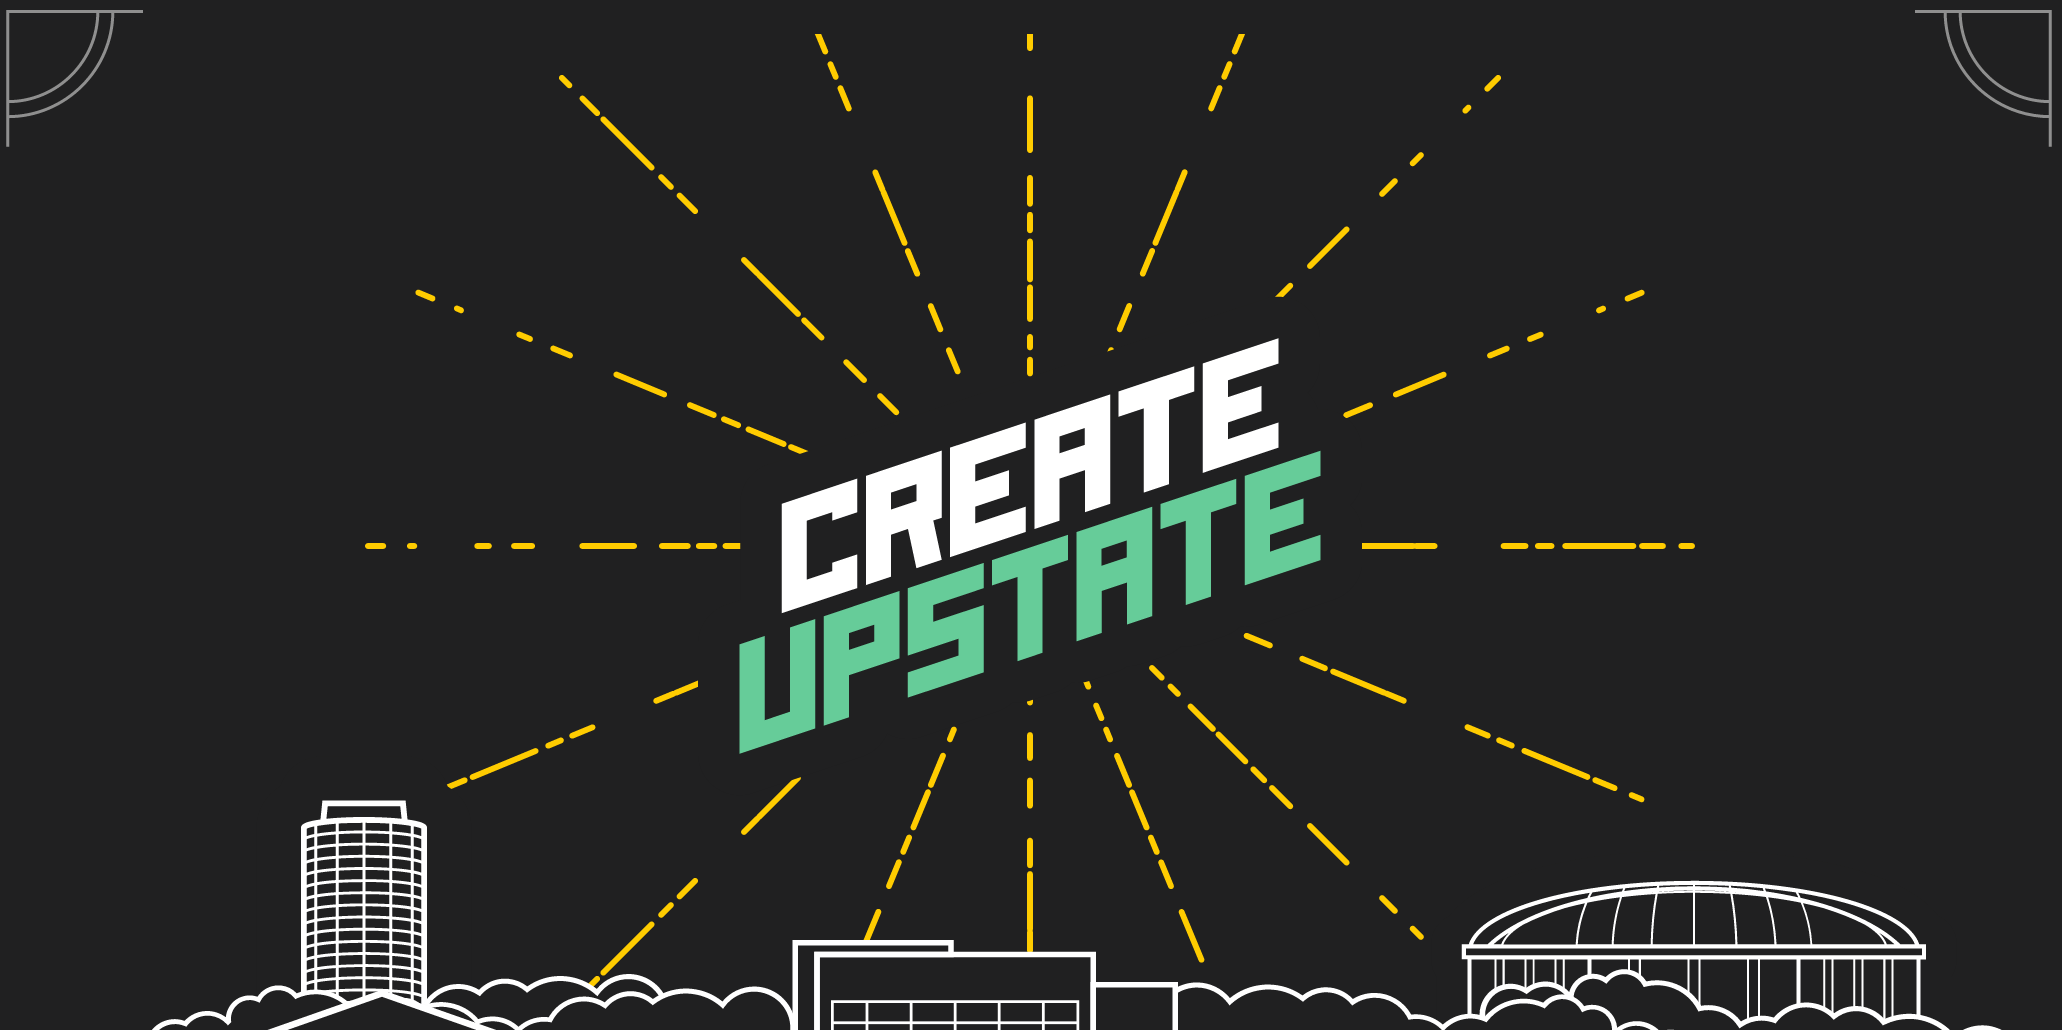 Create Upstate 2015